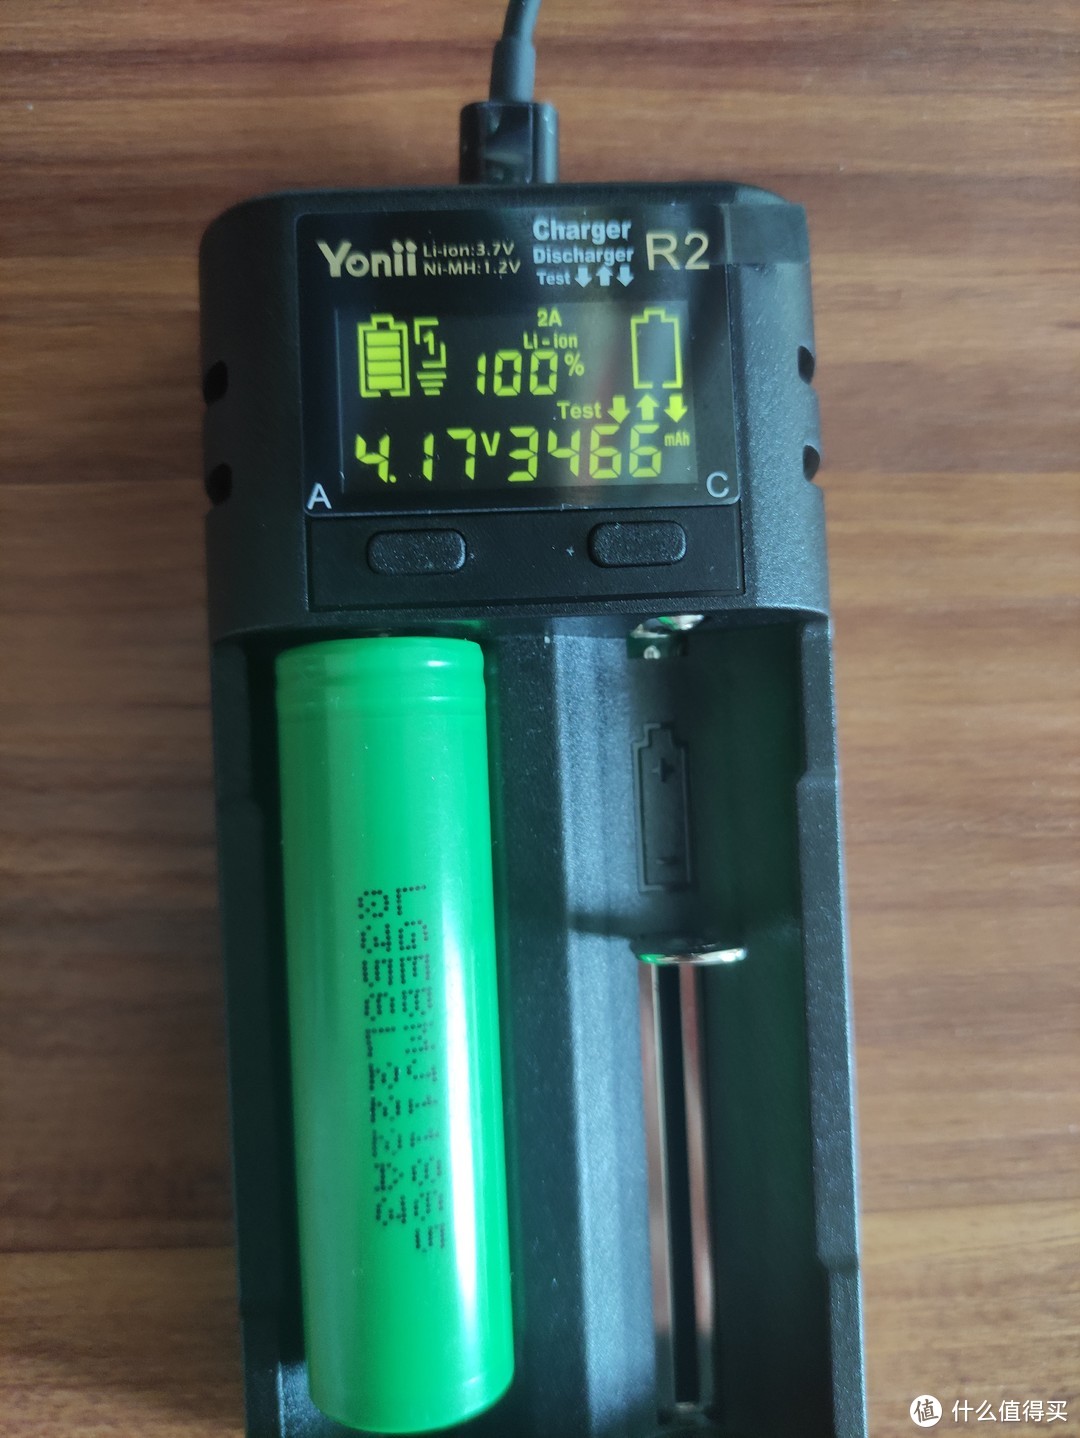 可能是曾经最便宜的双槽数显支持分容的全兼容电池充电器——Yonii R2使用评测